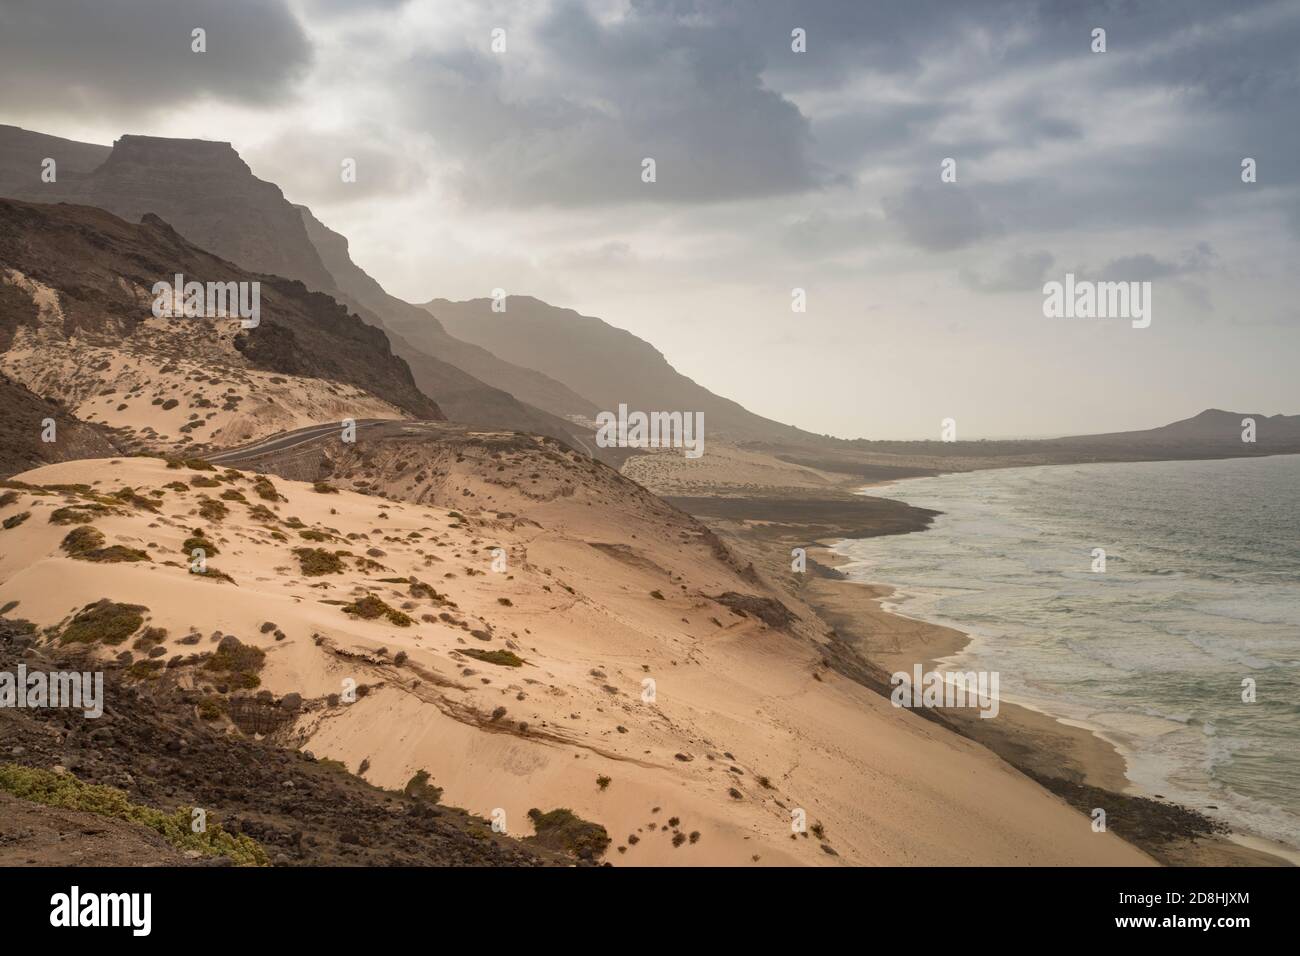 Remote, isolated beach on São Vicente island, Cape Verde. Stock Photo